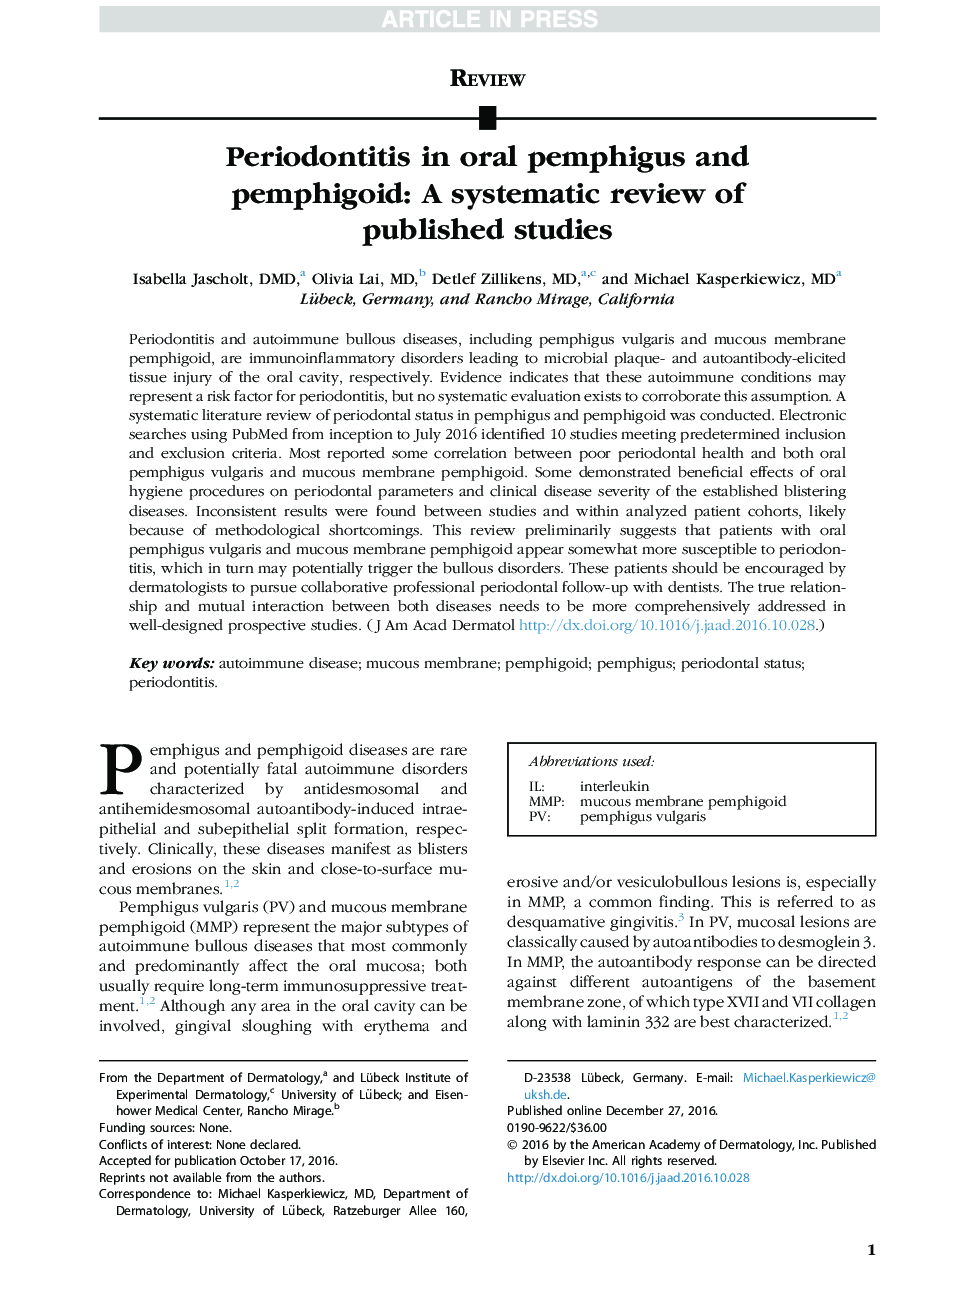 پریودونتیت در پمفیگوس دهان و پمفیگوئید: بررسی سیستماتیک مطالعات منتشر شده 